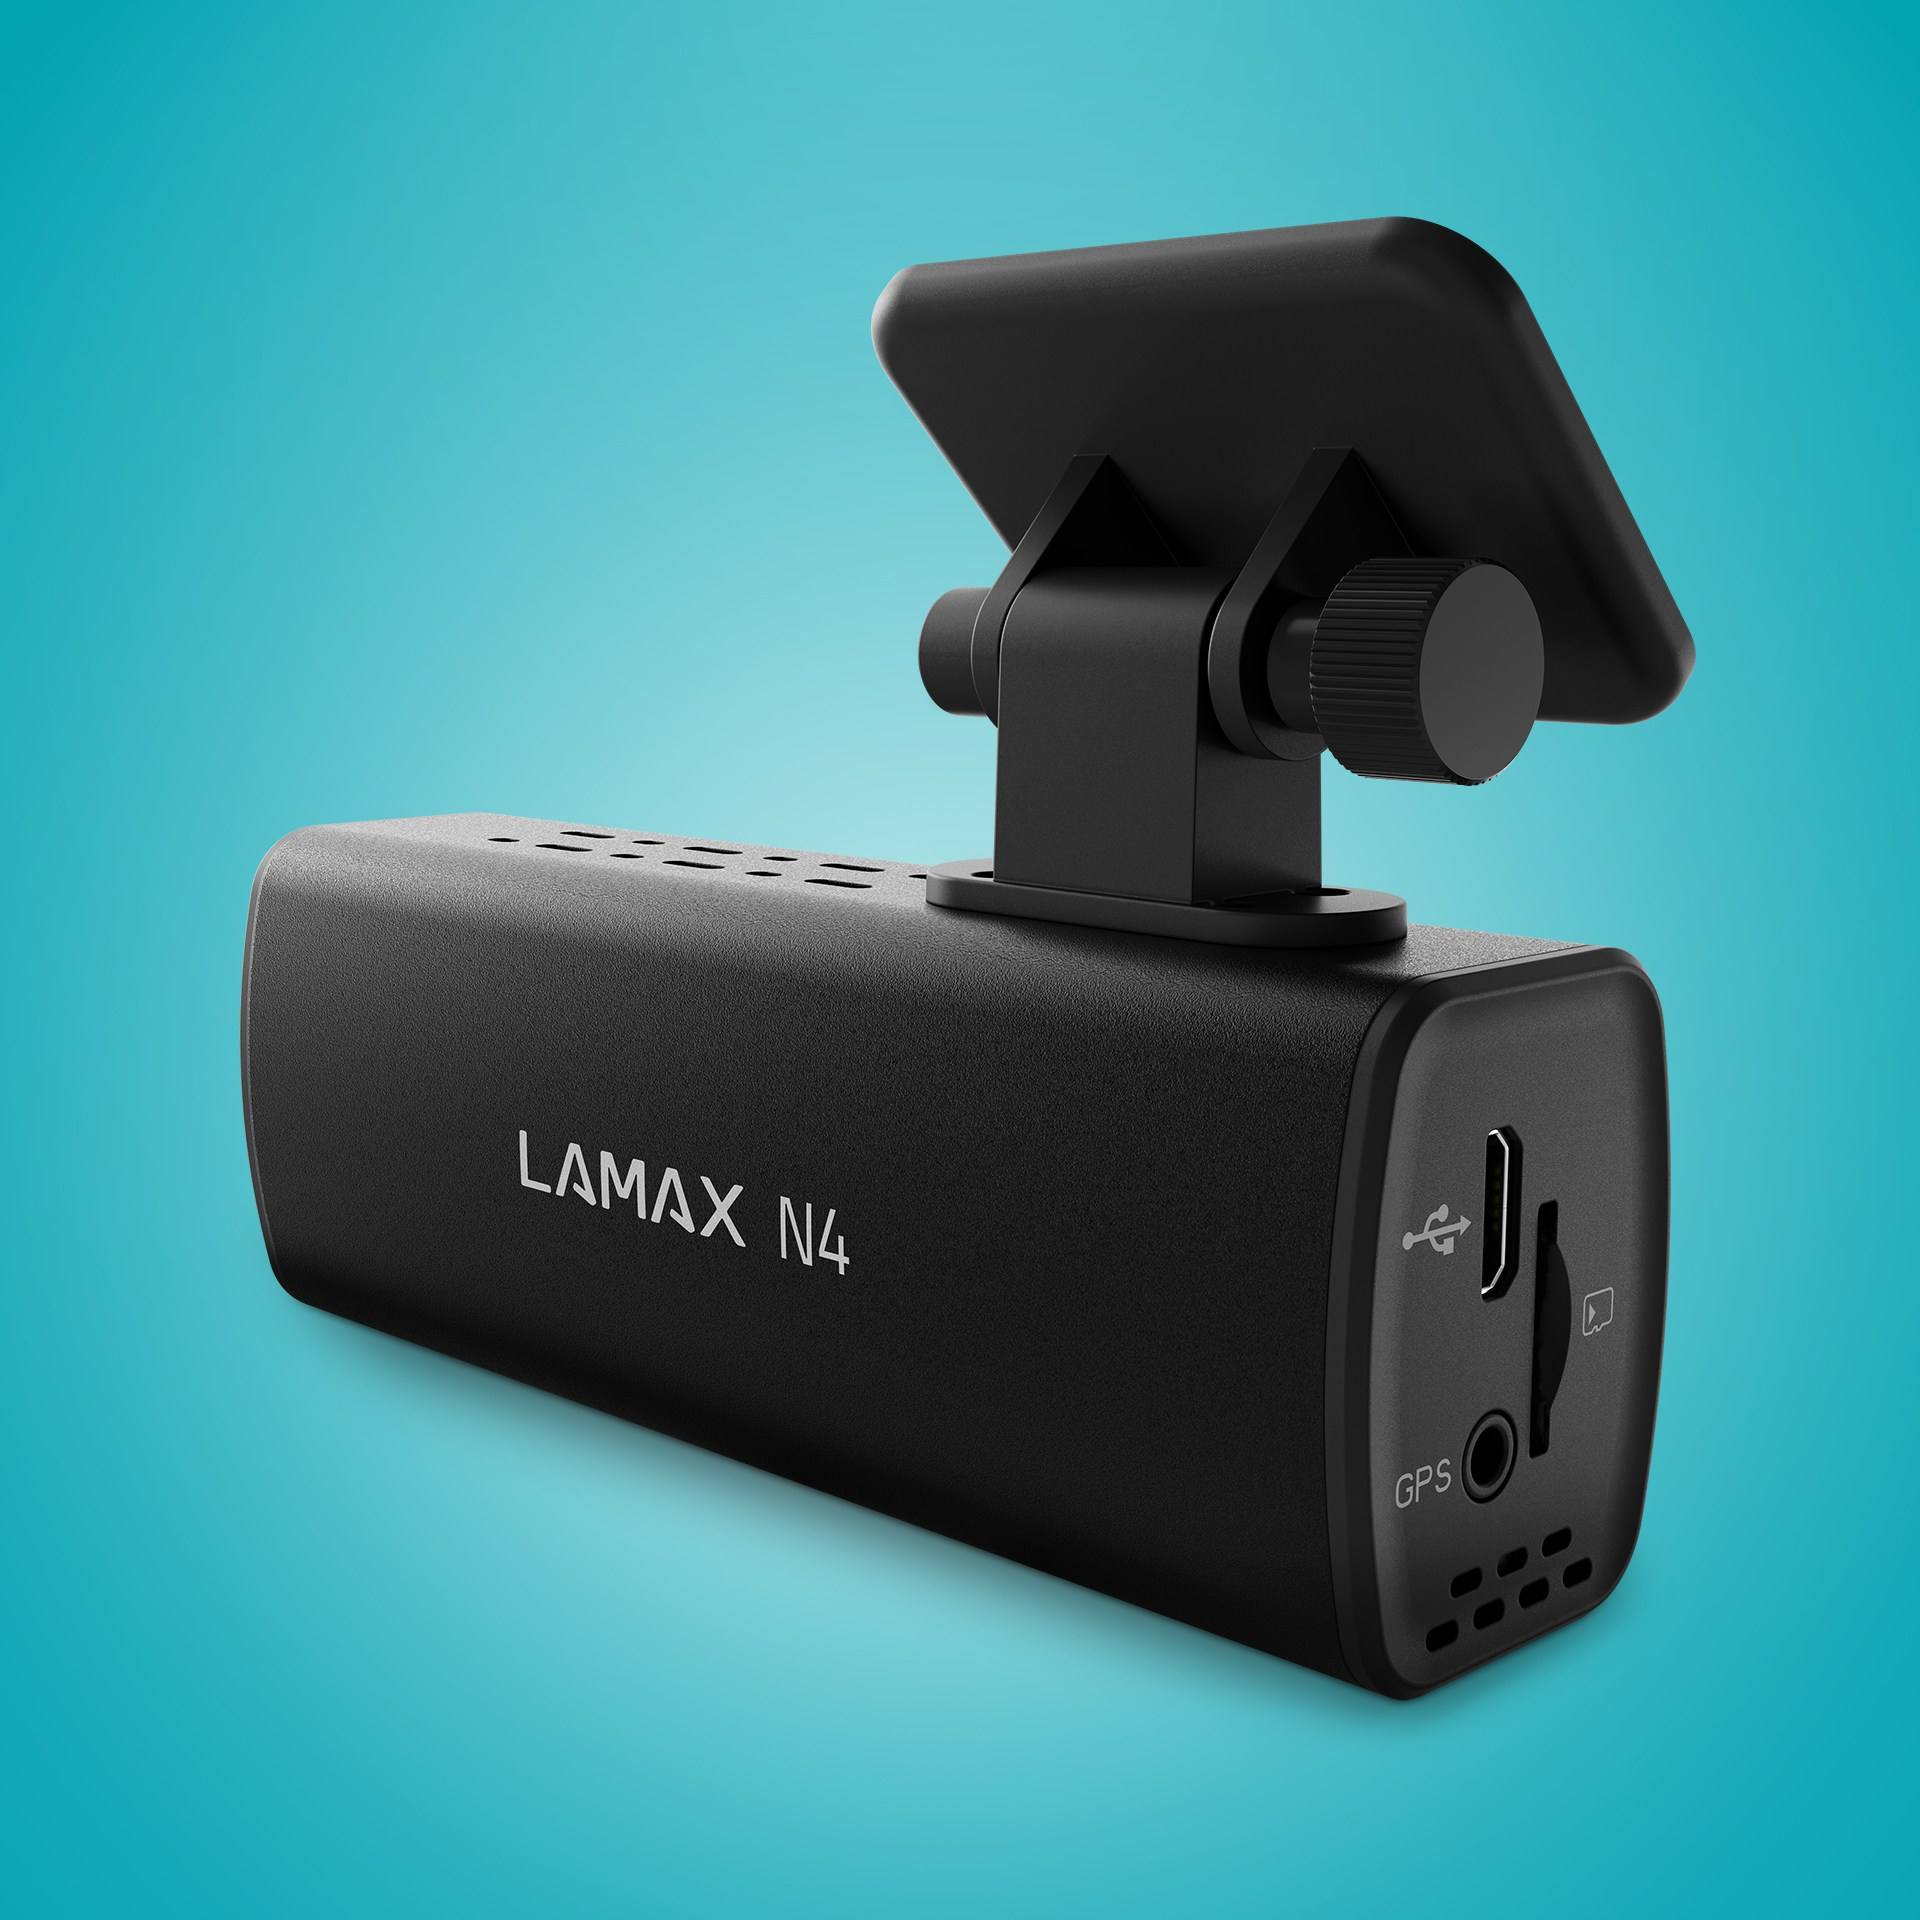 Display LAMAX LAMAX Dashcam N4